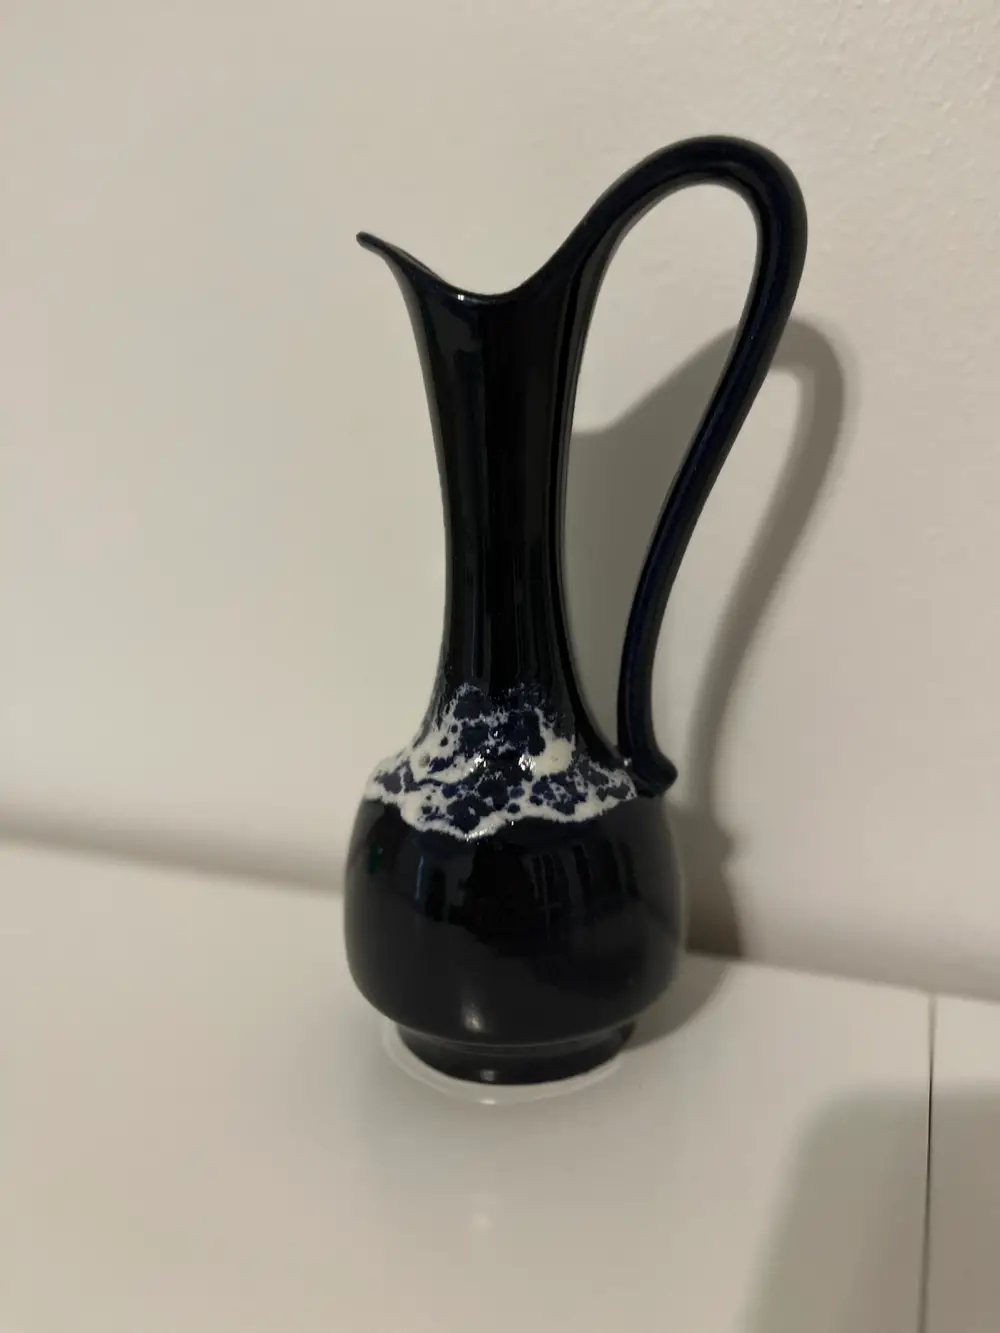 West germany Vase / kande